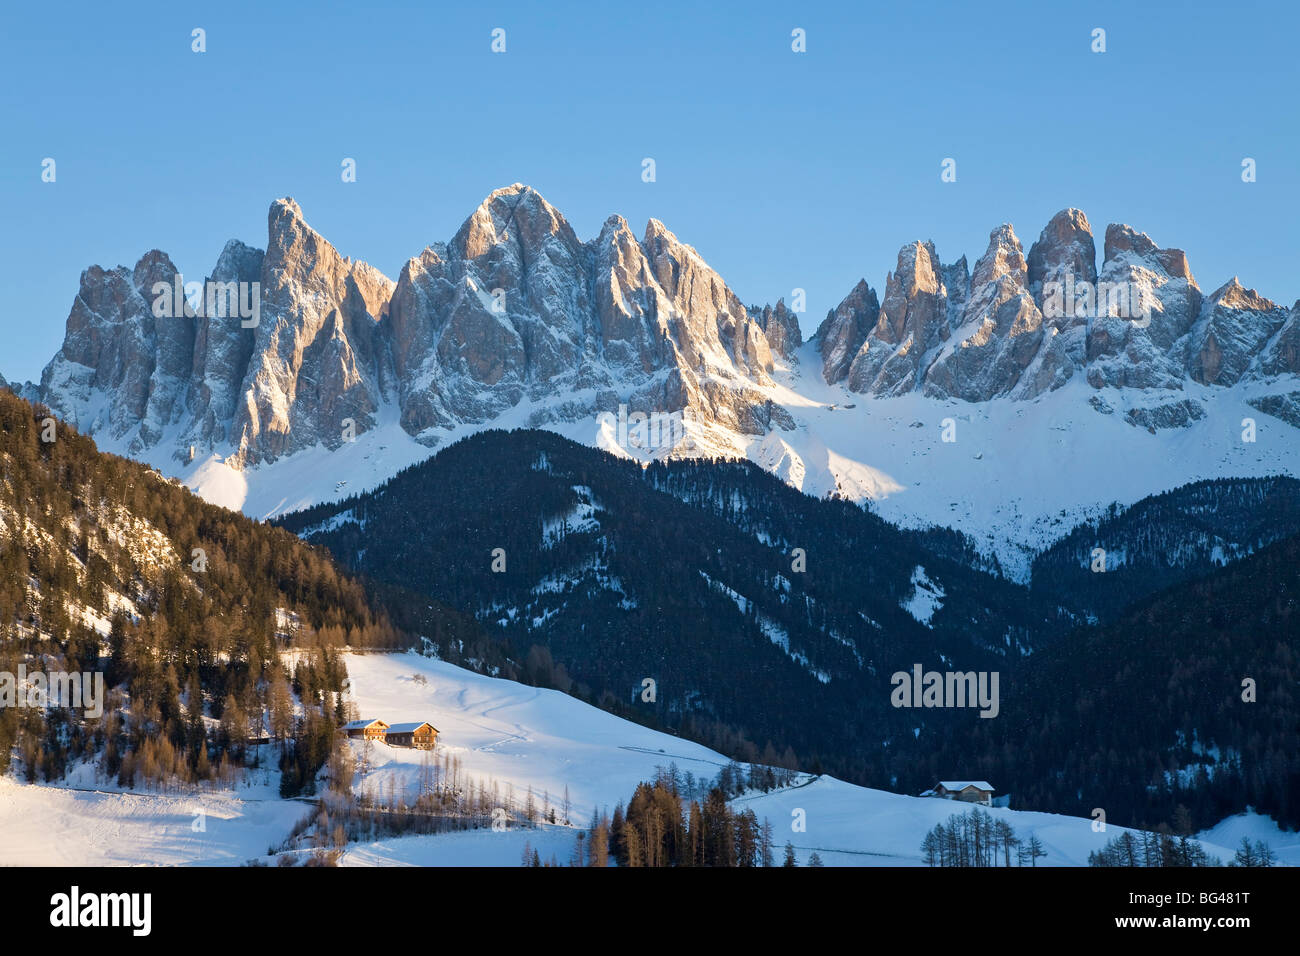 St. Magdalena village, Geisler Spitzen (3060m), Val di Funes, Dolomites mountains, Trentino-Alto Adige, South Tirol, Italy Stock Photo